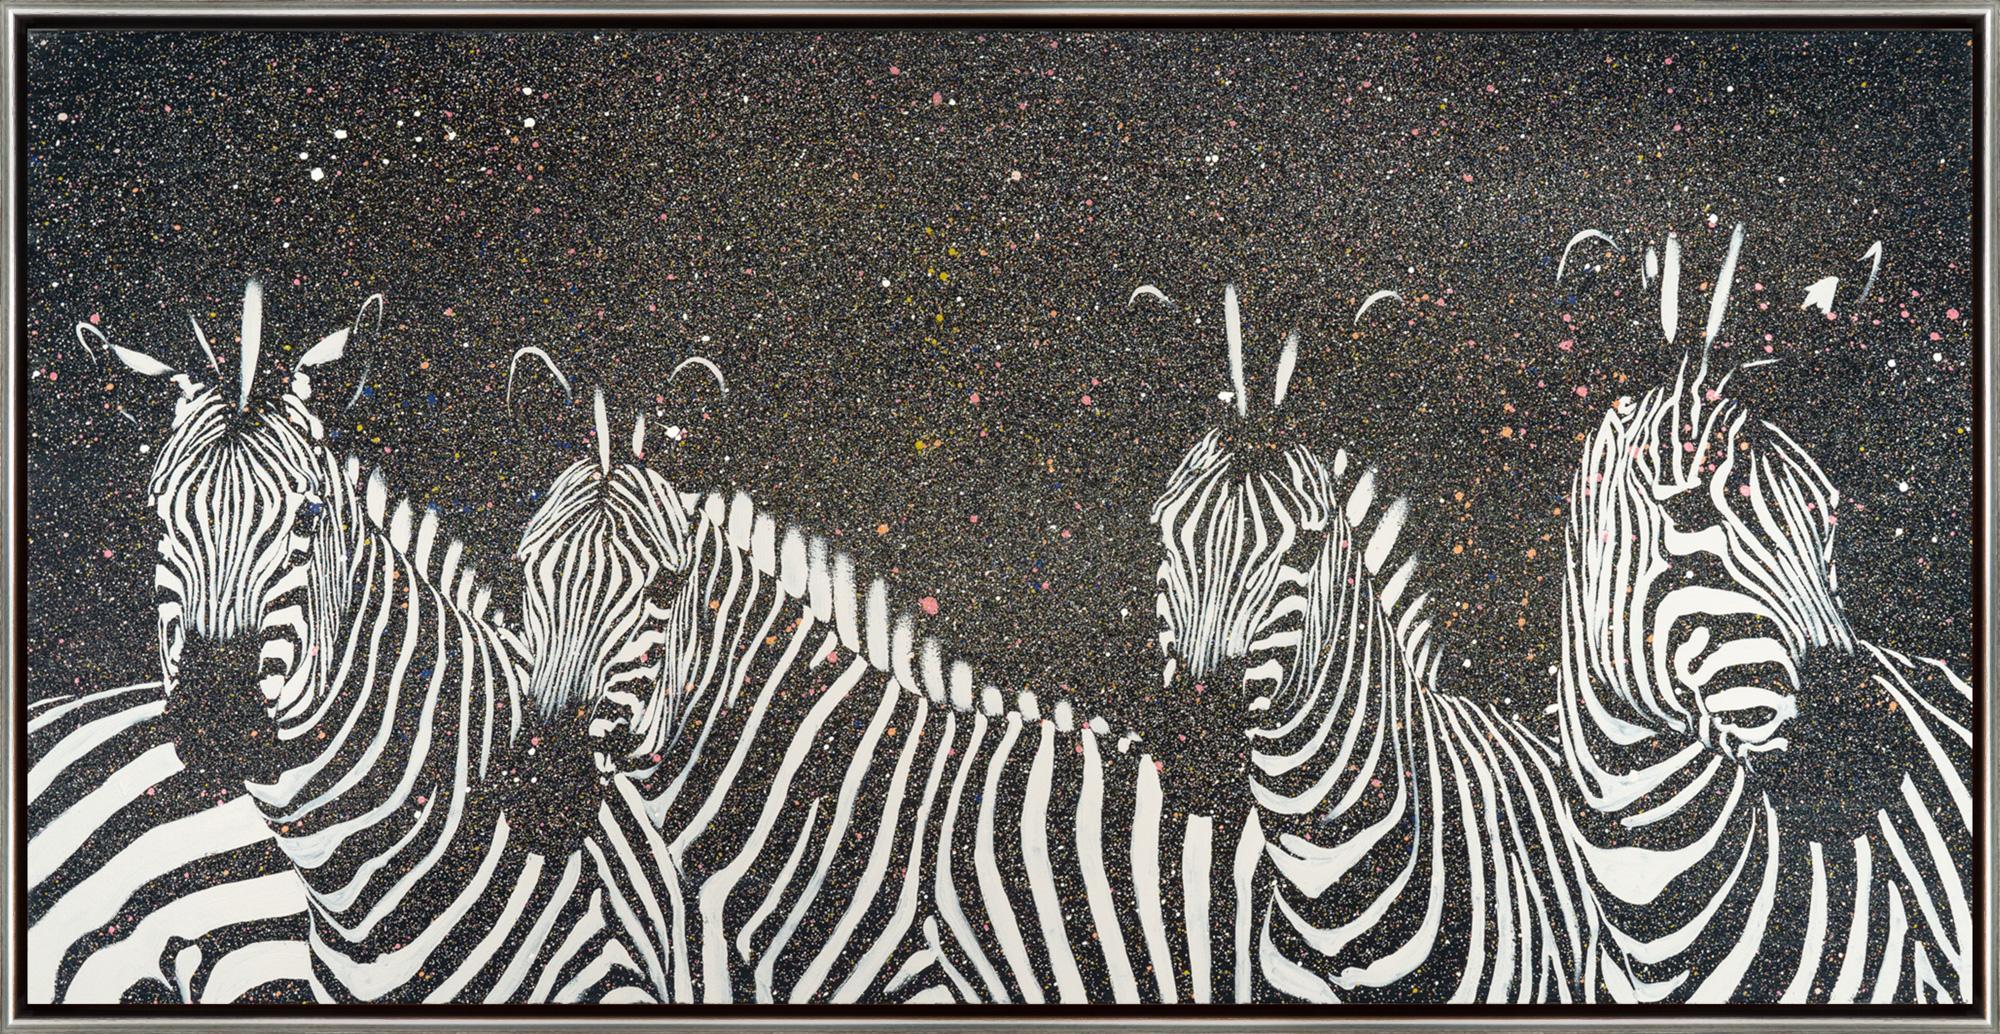 Joshua Brown Animal Painting – "Zebra in dunkler Nacht" Zeitgenössisches Öl und Acryl auf Leinwand Gerahmtes Gemälde